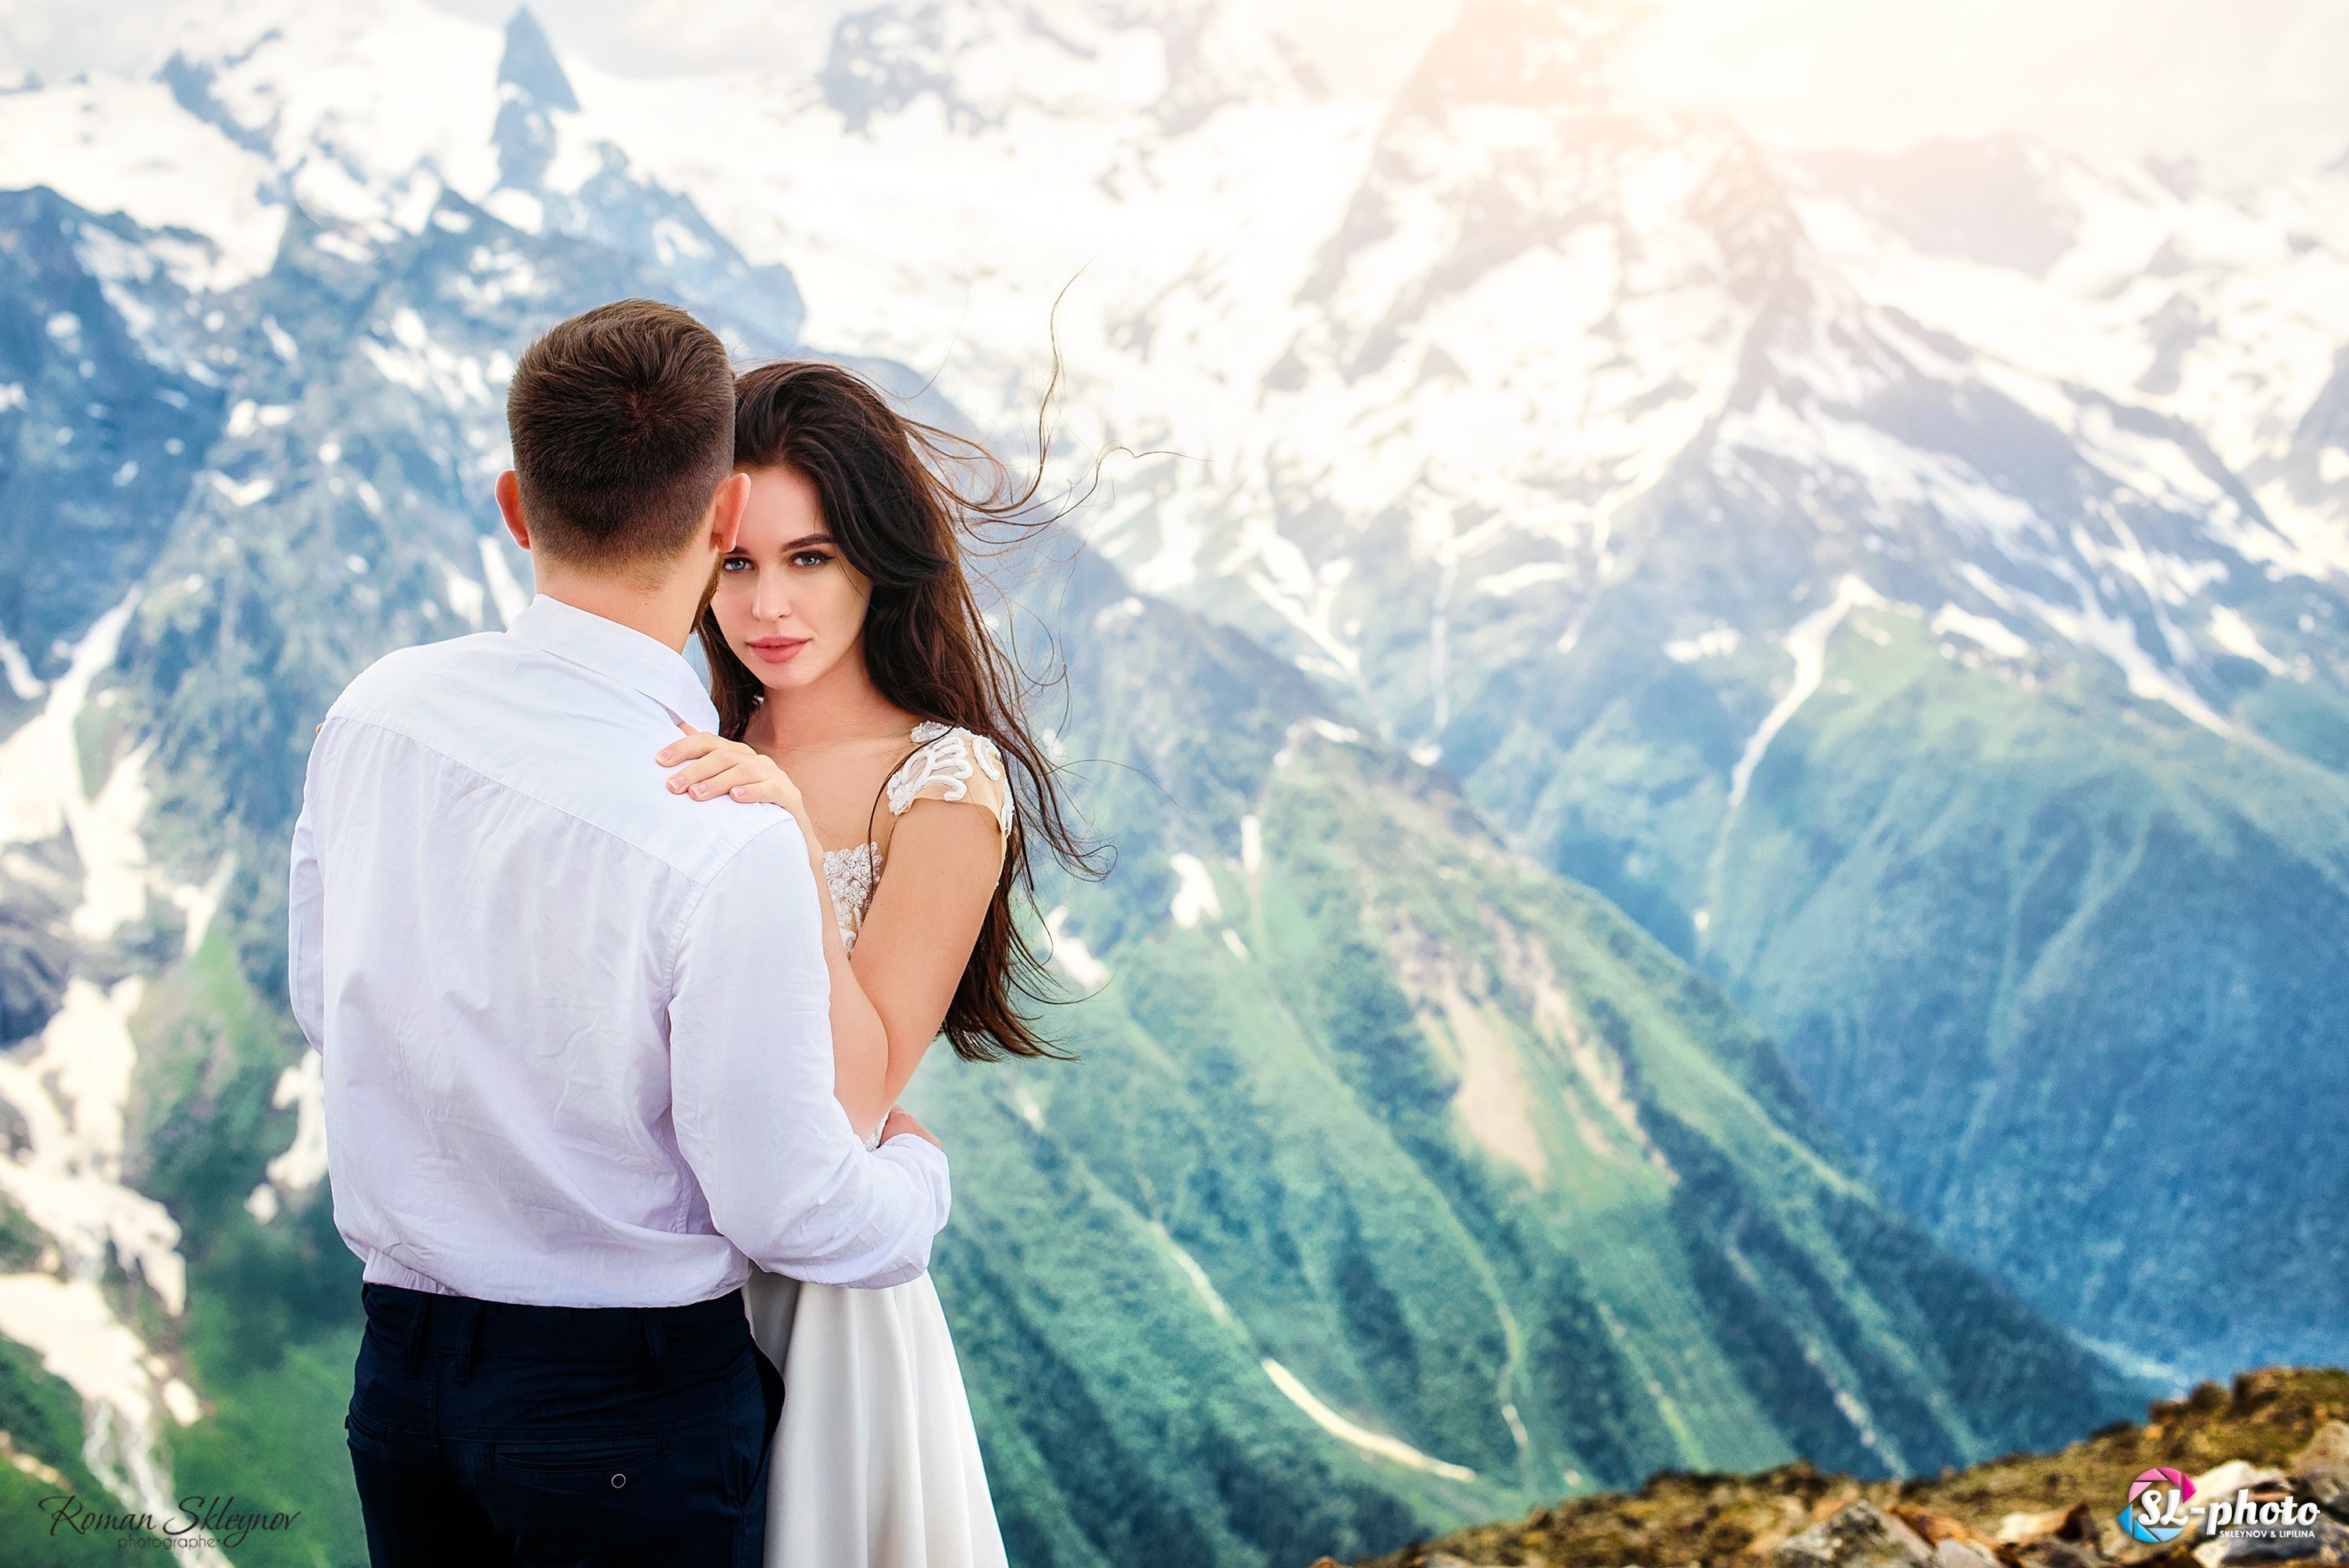 Обнимая горы. Свадьба в горах. Влюбленные в горах. Свадебная фотосессия в горах. Пара в горах.